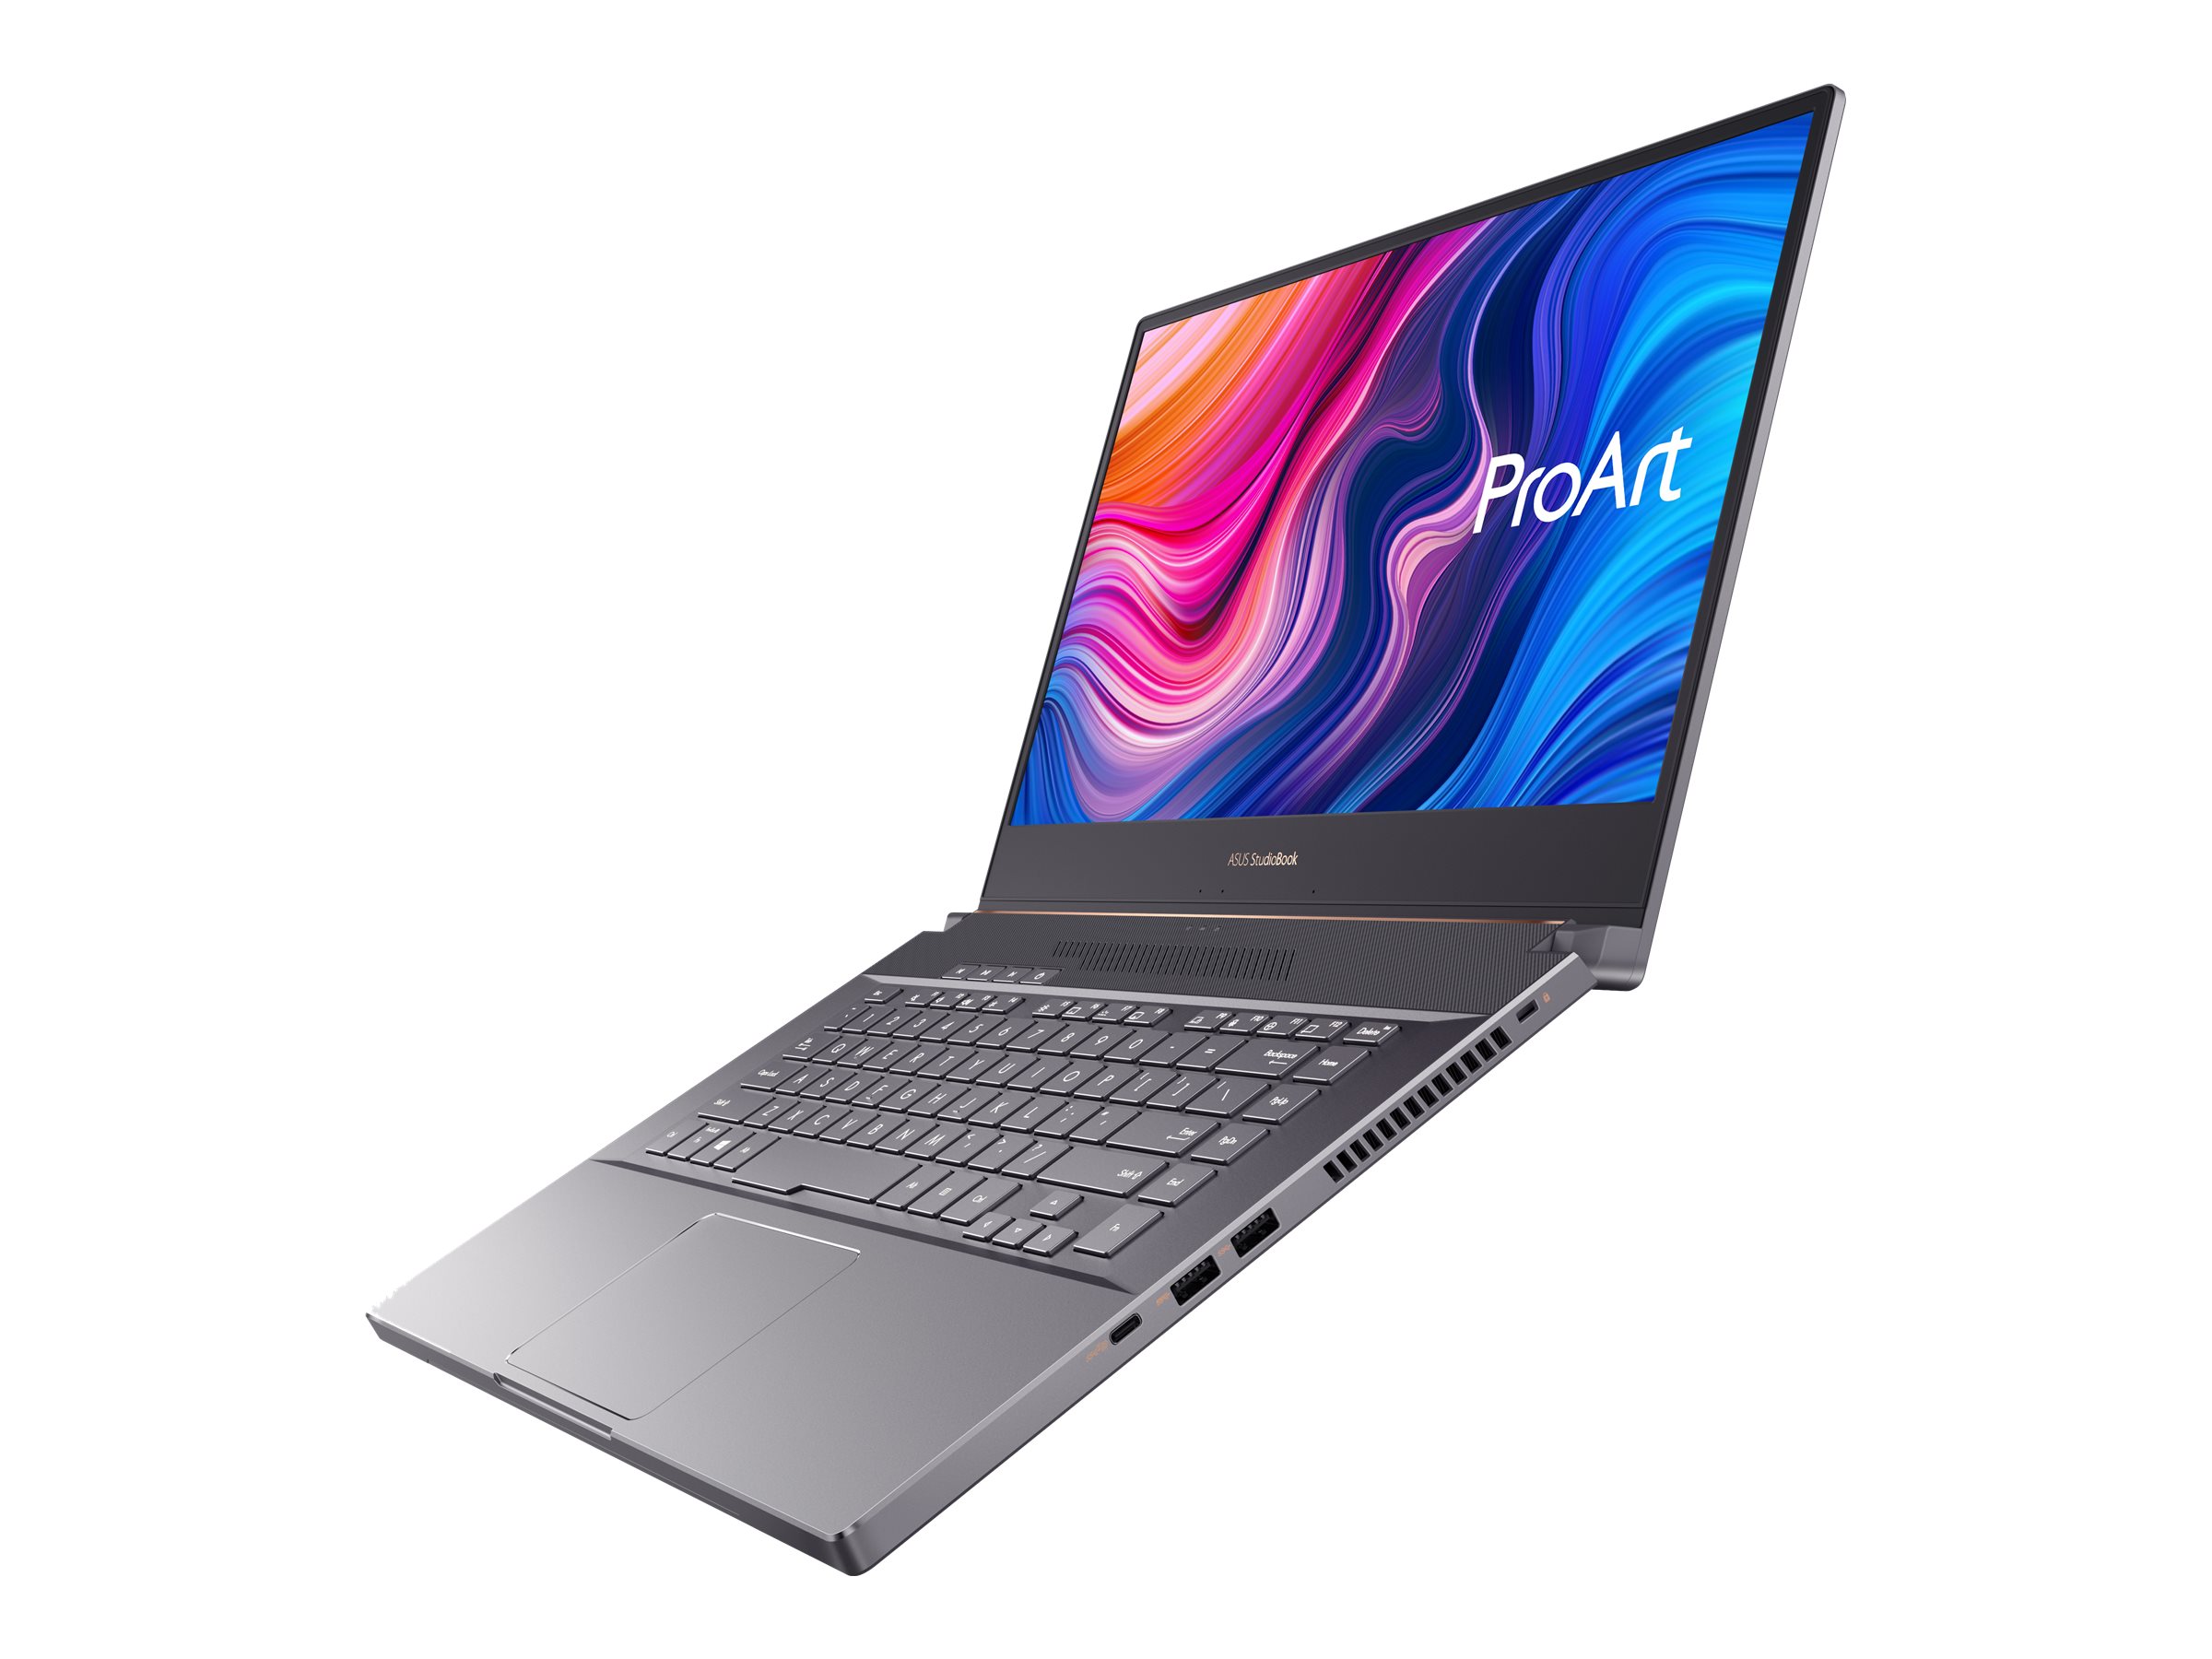 ASUS ProArt StudioBook Pro 15 W500G5T-XS77 | www.publicsector